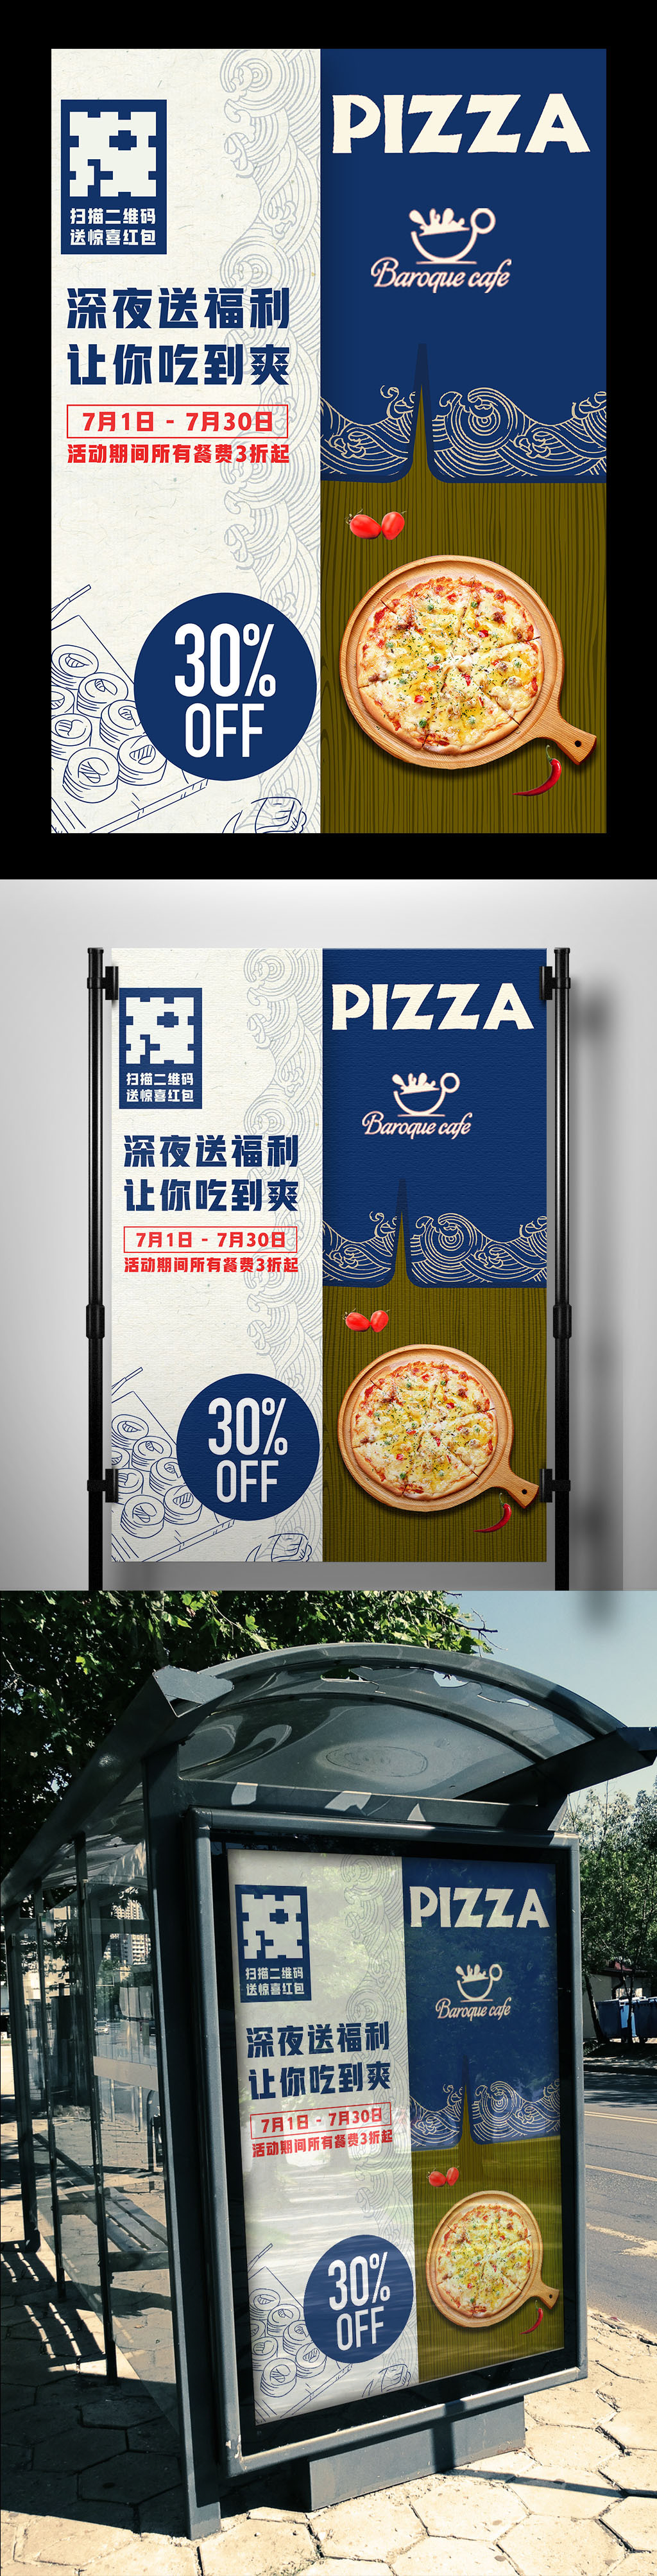 蓝色背景日本传统美食寿司宣传海报图片